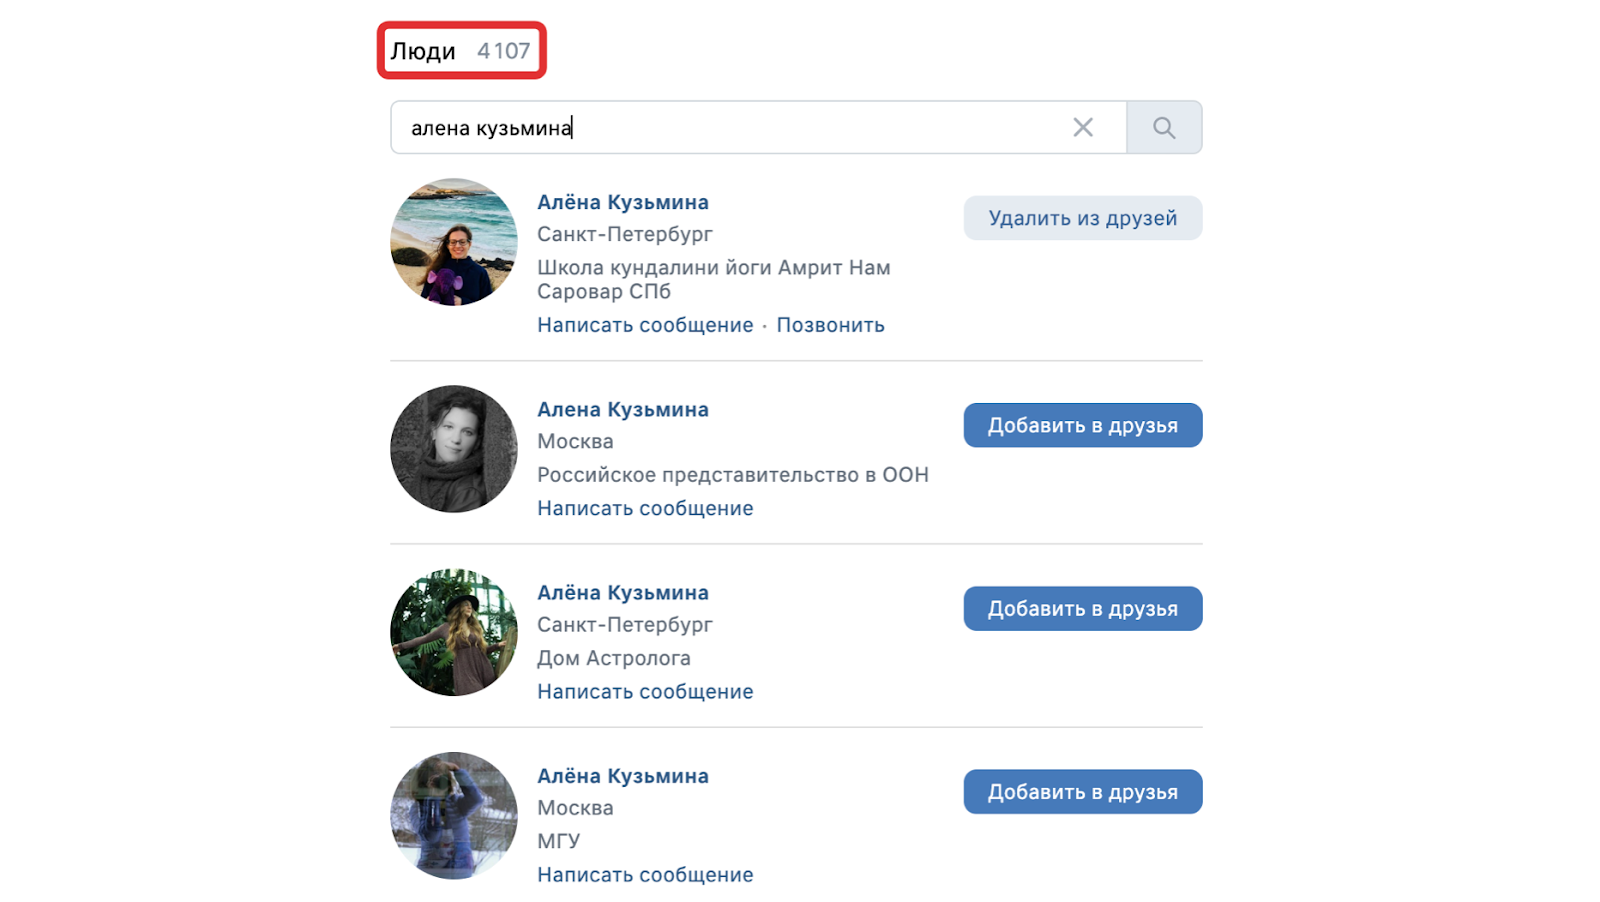 Однажды я хотел найти ВКонтакте девушку по имени Алёна Кузьмина. В поиске по людям были тысячи результатов — и нужного человека я не нашёл. Тогда у меня и появилась гипотеза, что расстояние можно рассматривать как один из критериев ранжирования